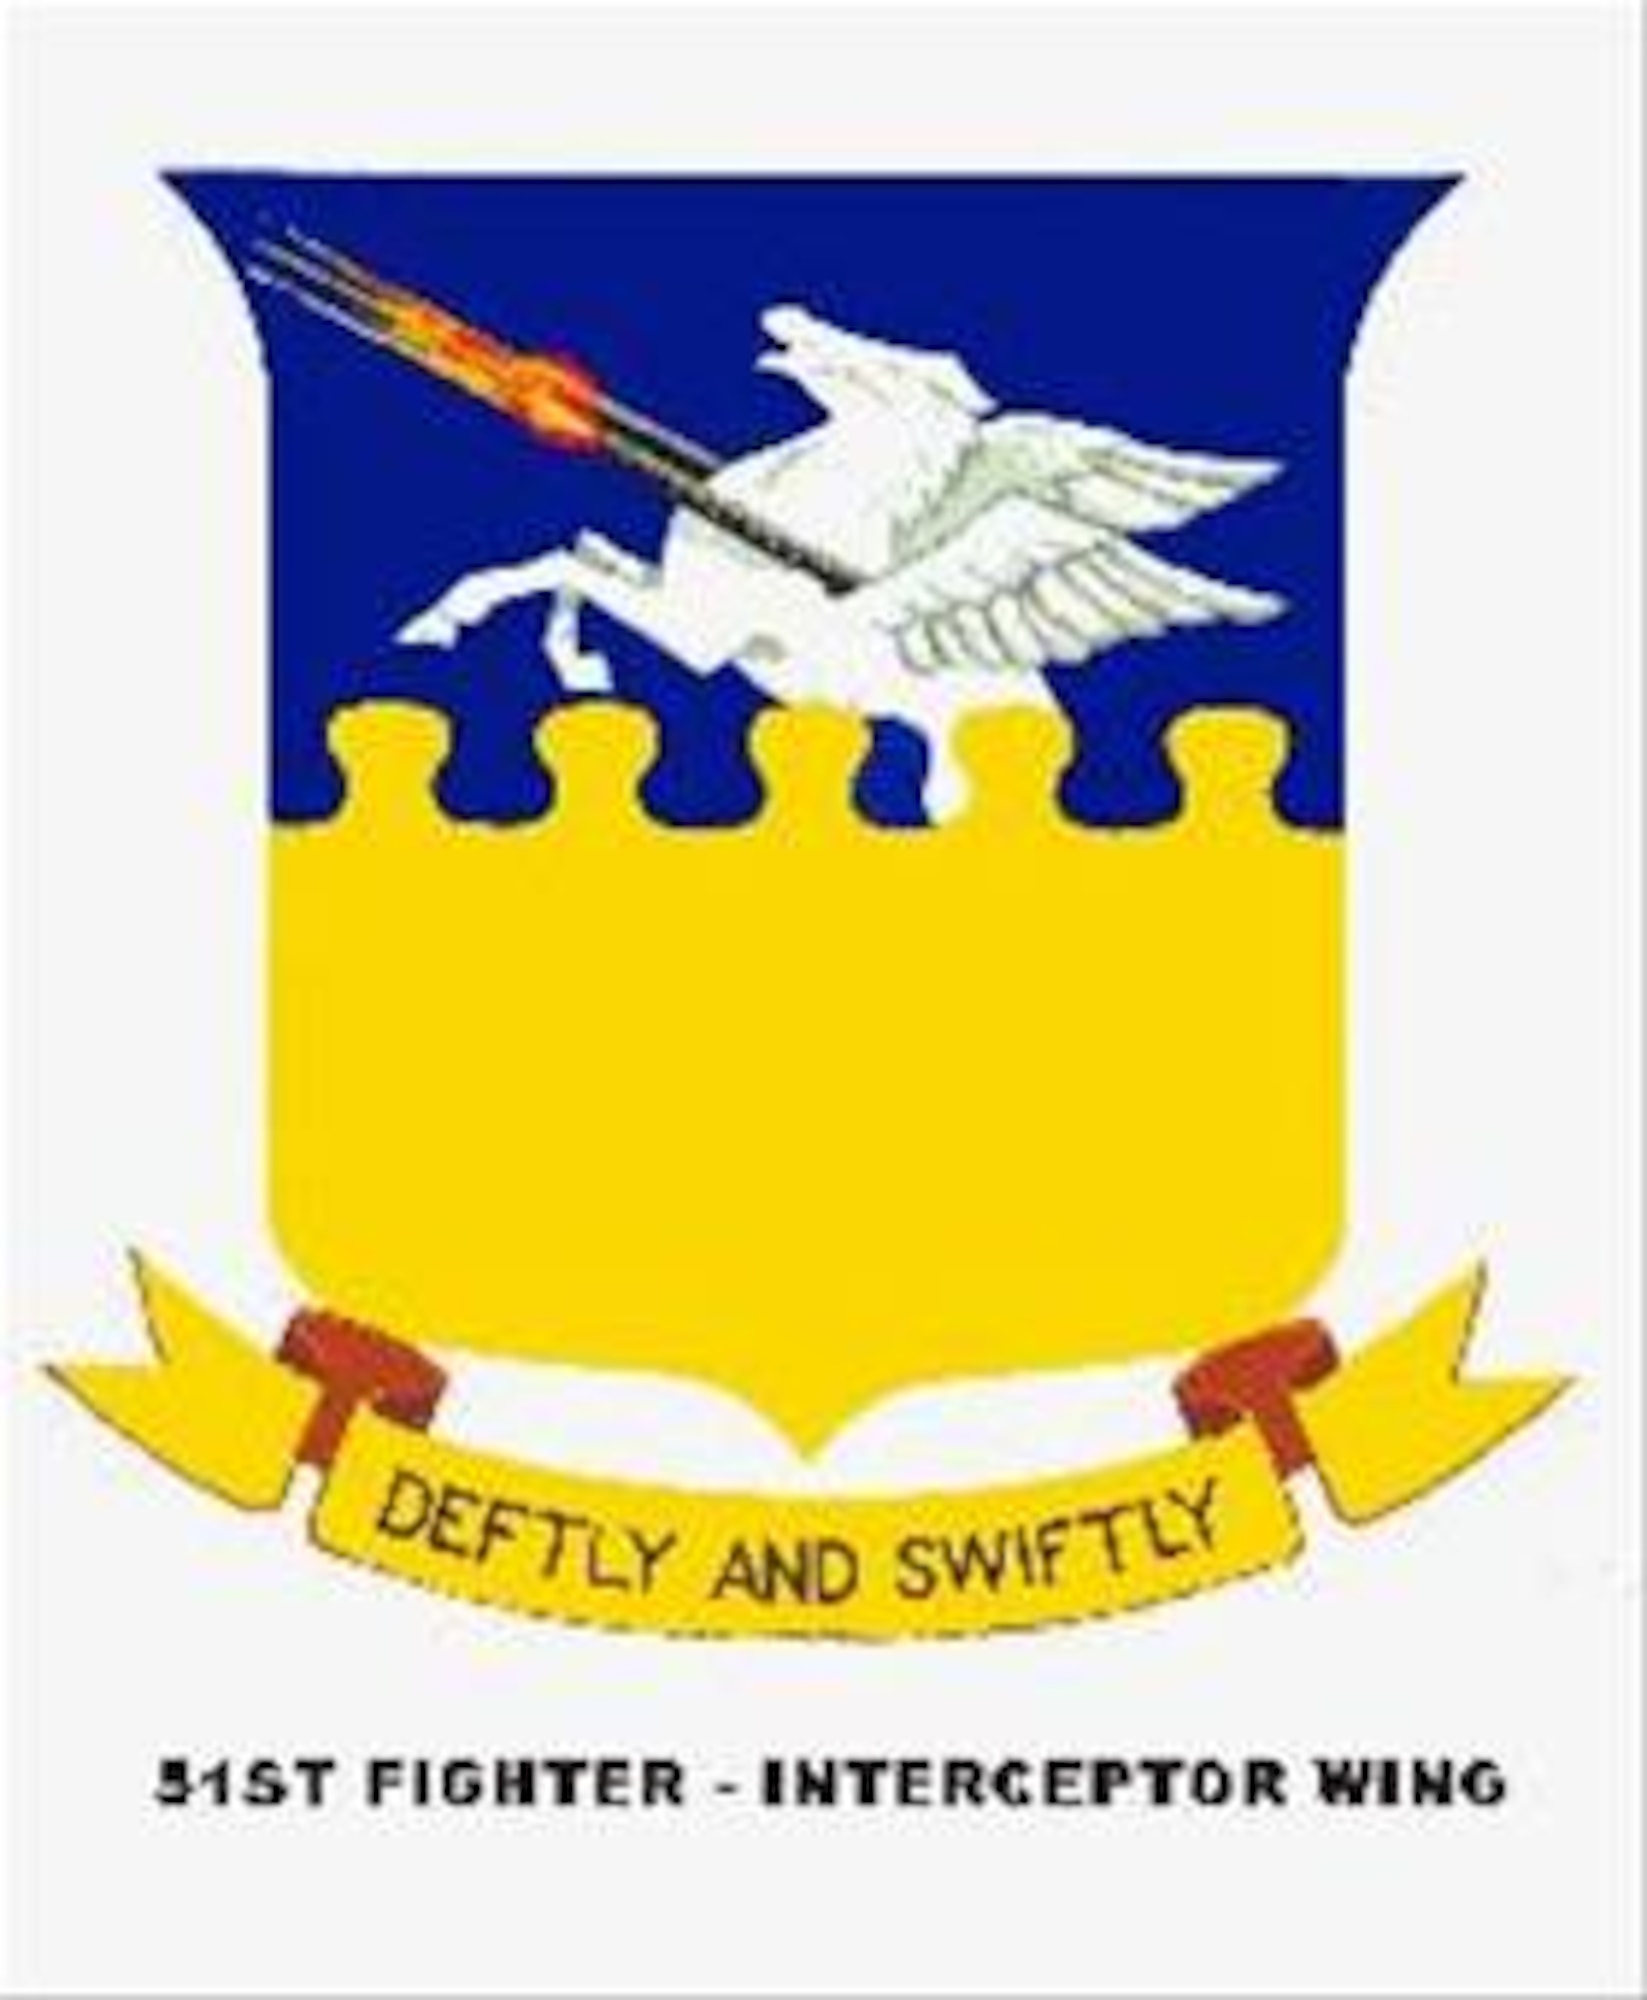 Original emblem of the 51st Fighter Inteceptor Wing.